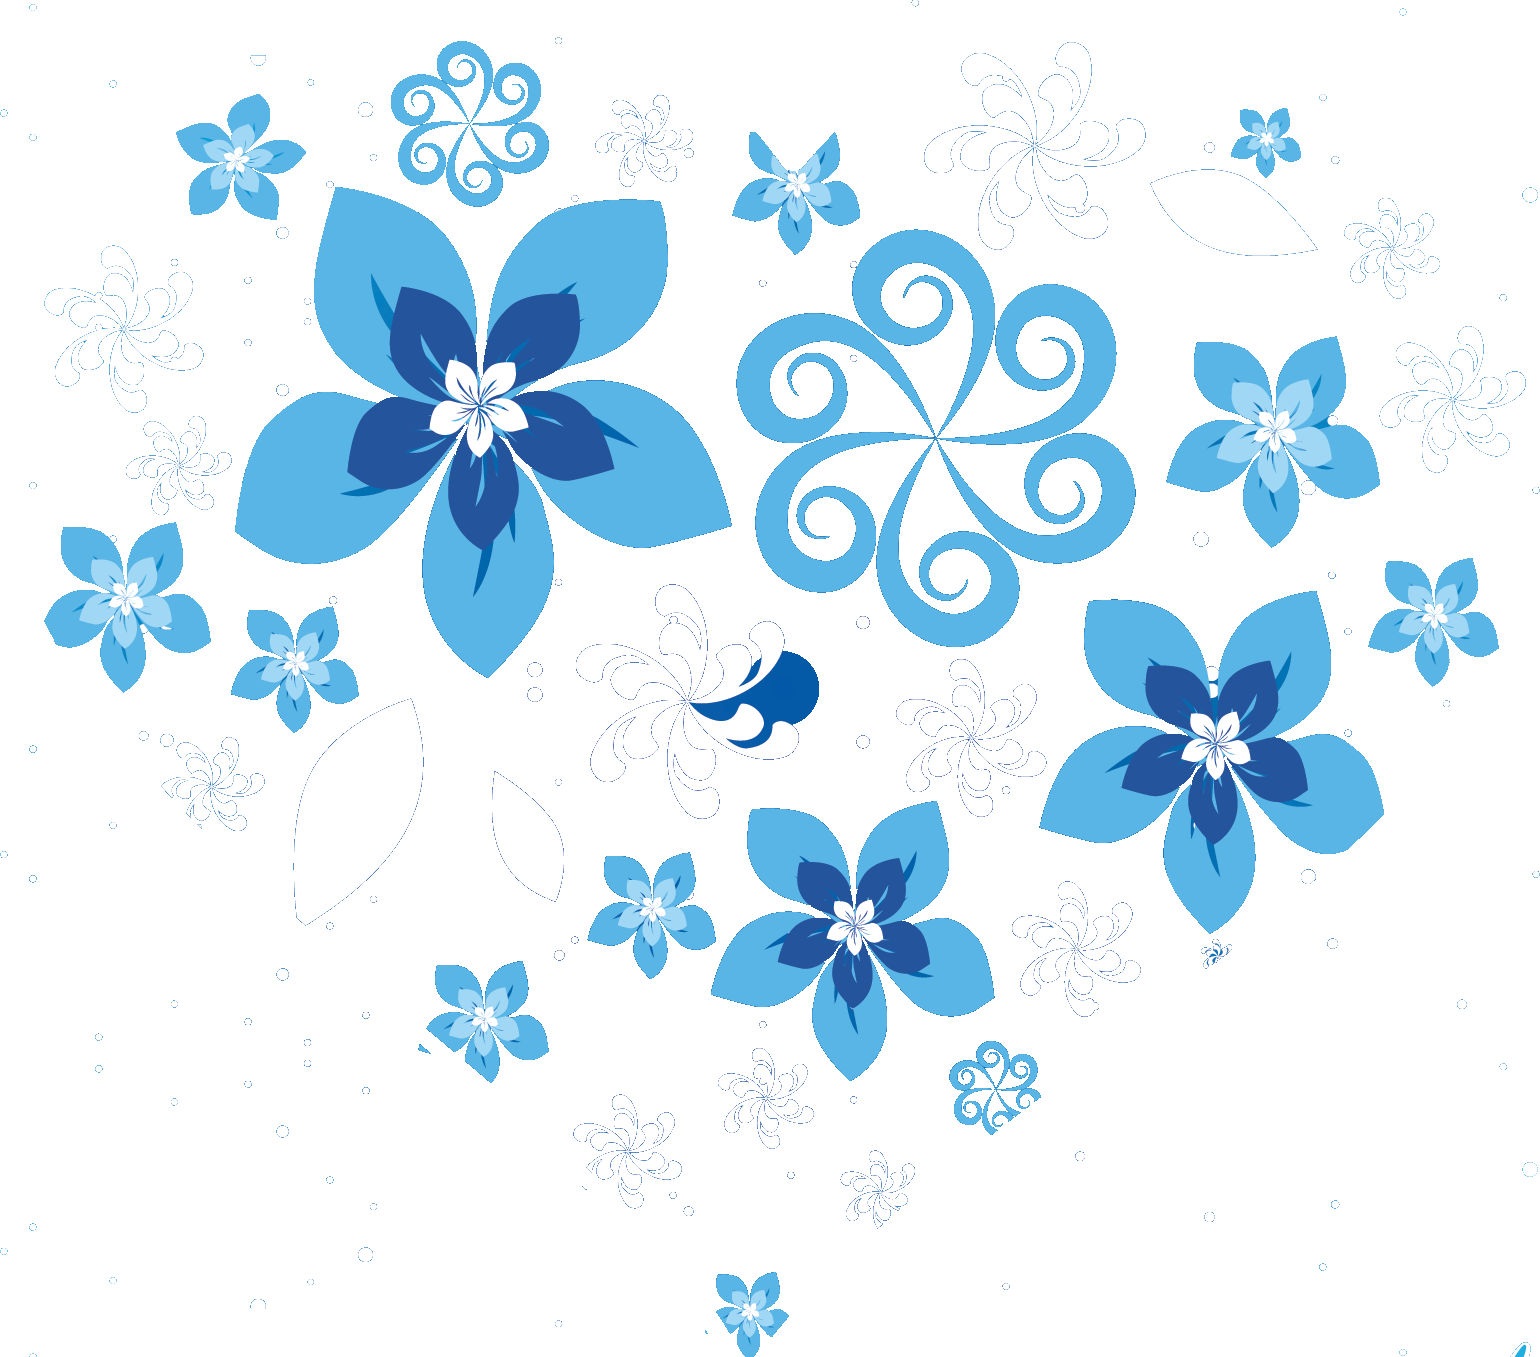 青い花のイラスト フリー素材 No 152 水色の花々